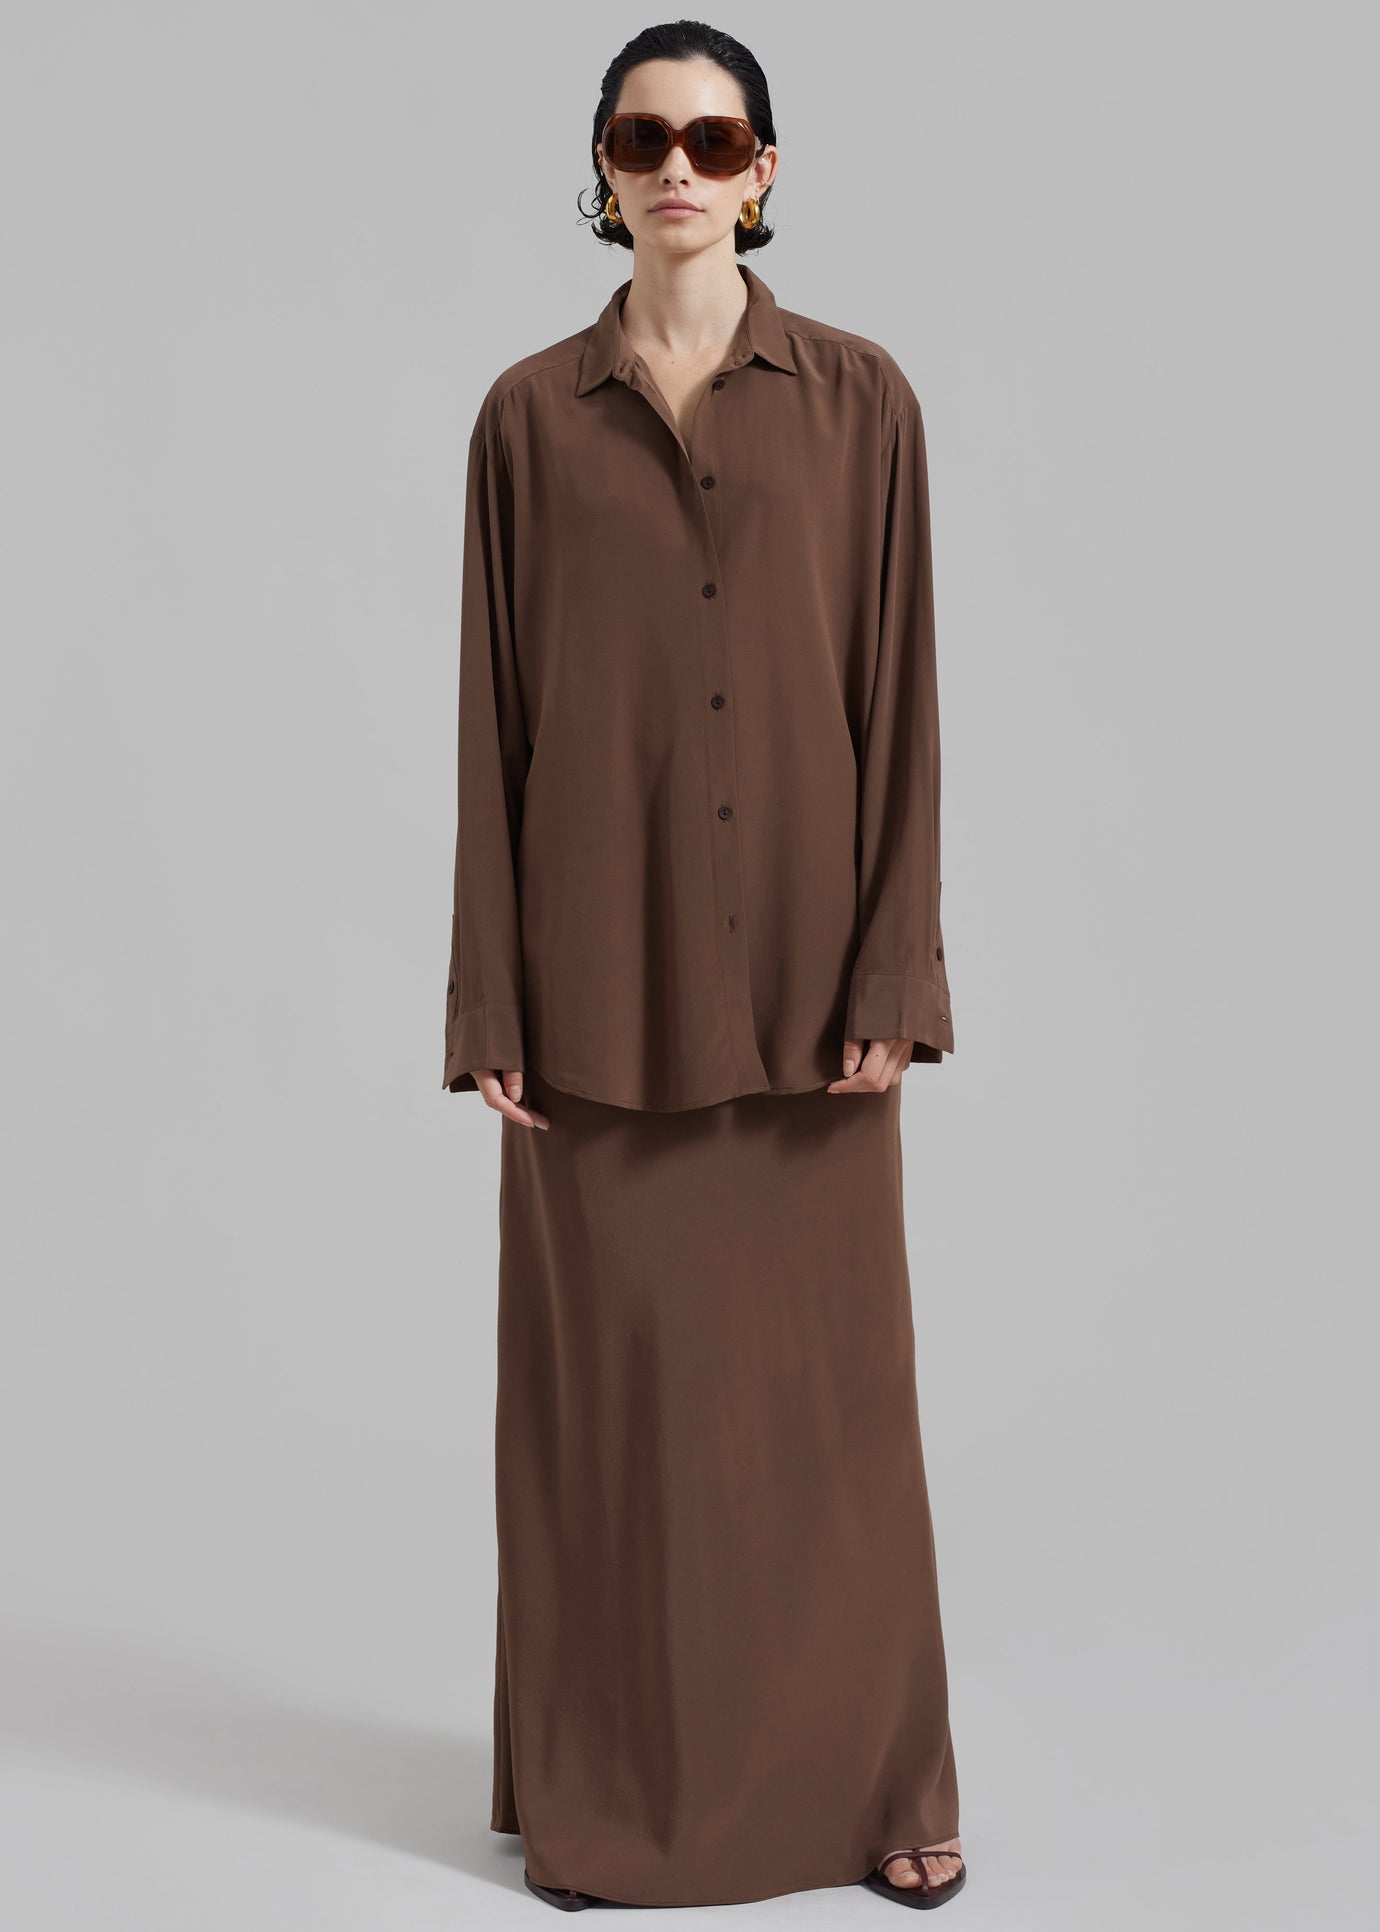 Matteau Long Sleeve Silk Shirt - Sable